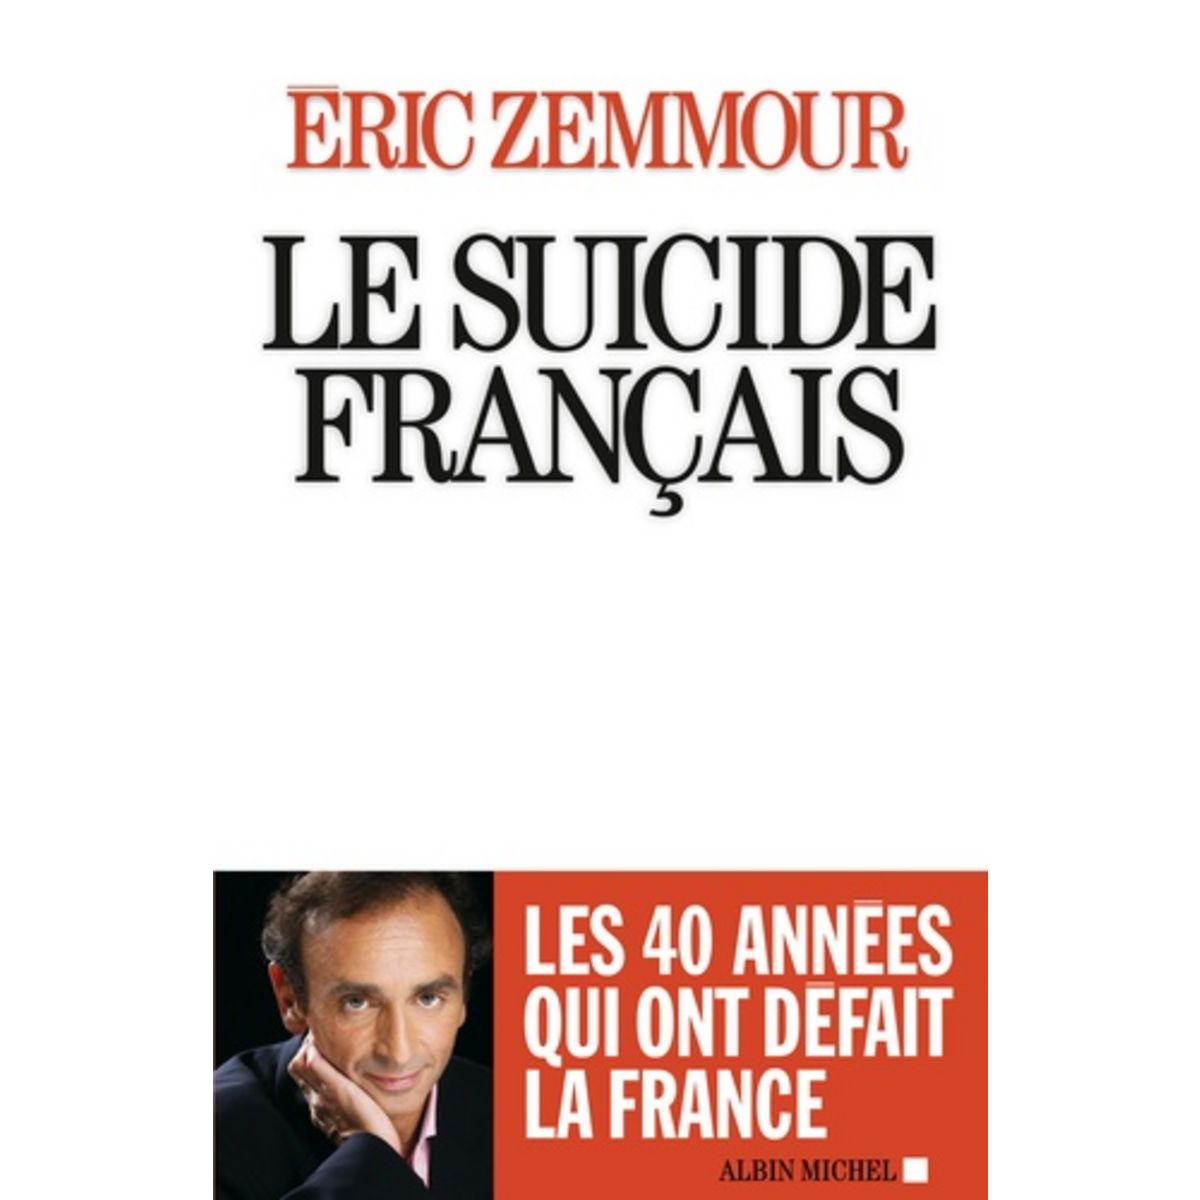  LE SUICIDE FRANCAIS, Zemmour Eric